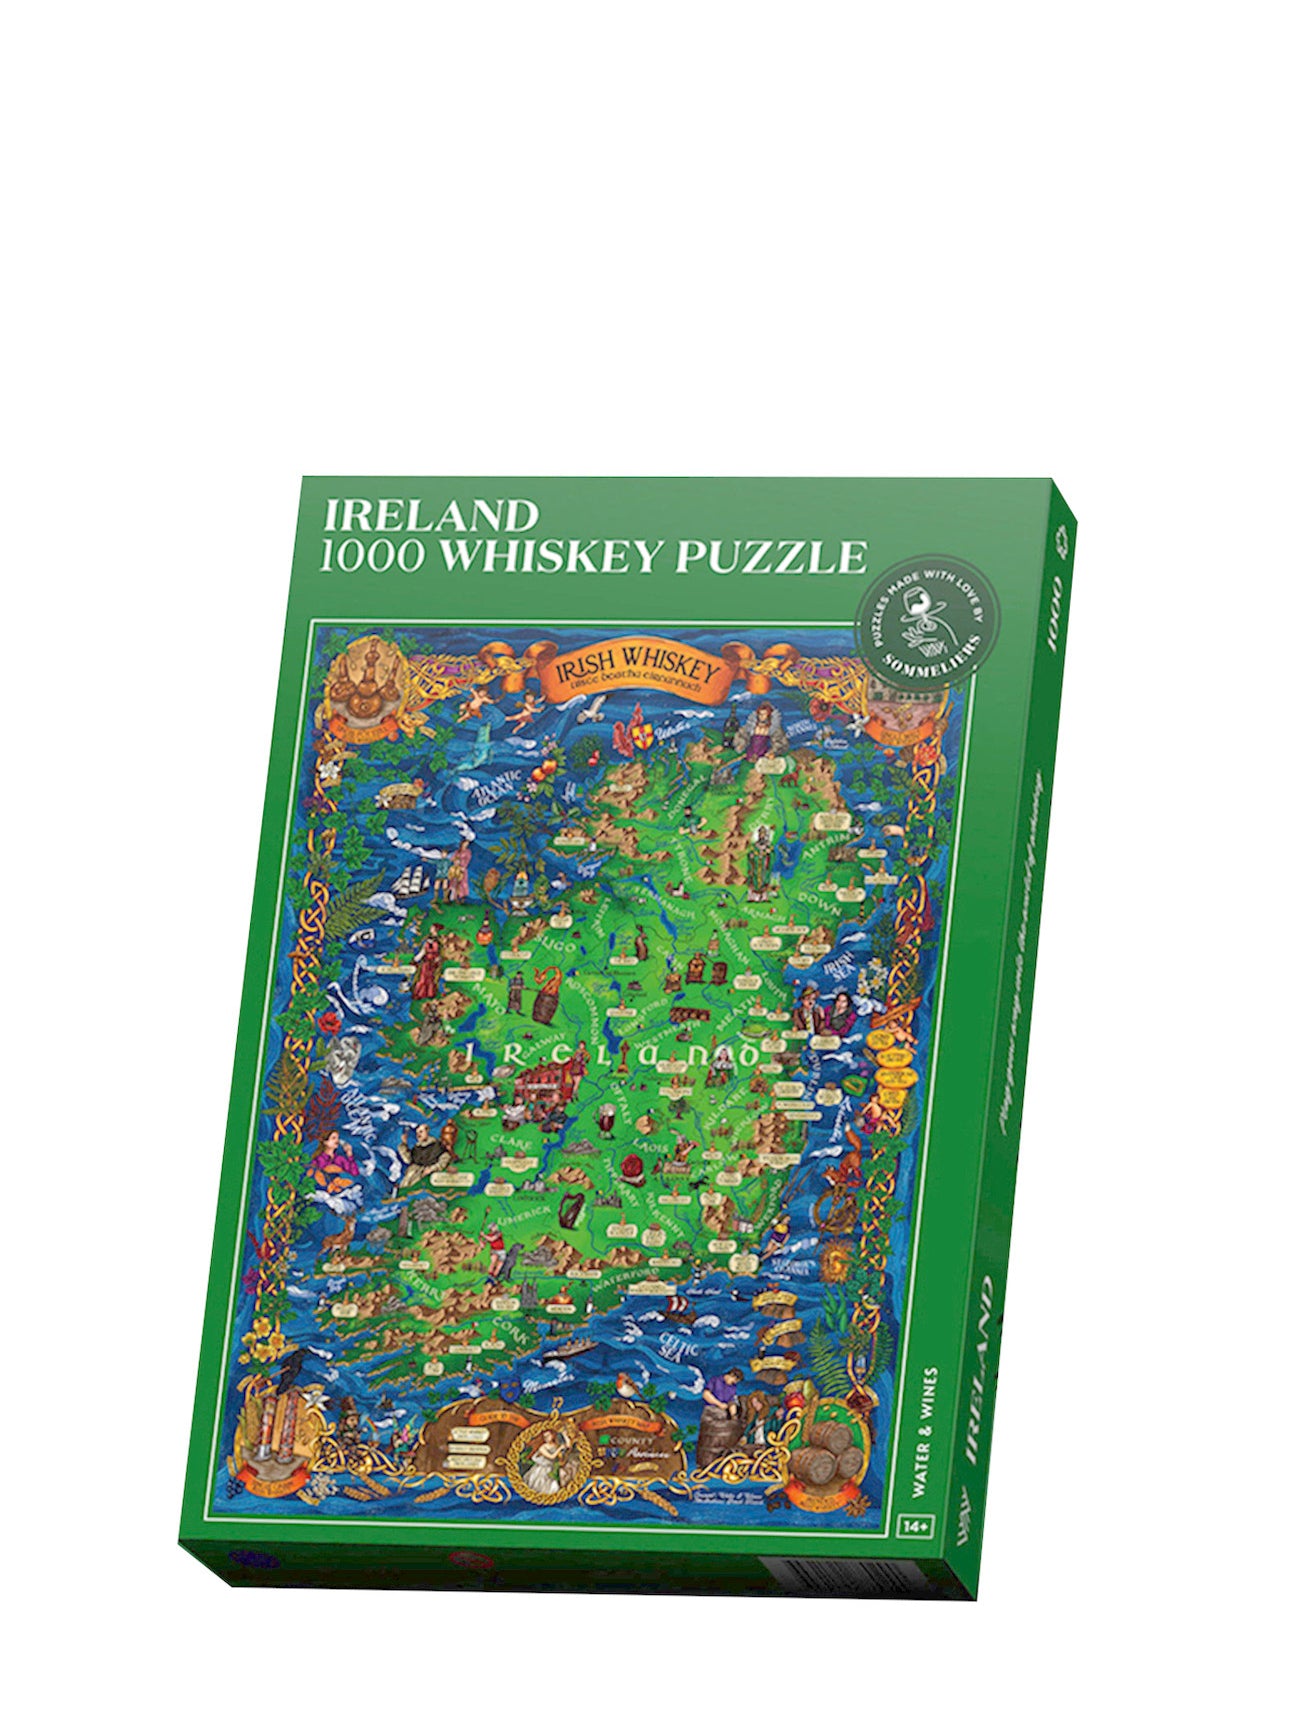 Whiskey Puzzle Ireland, 1000 pcs